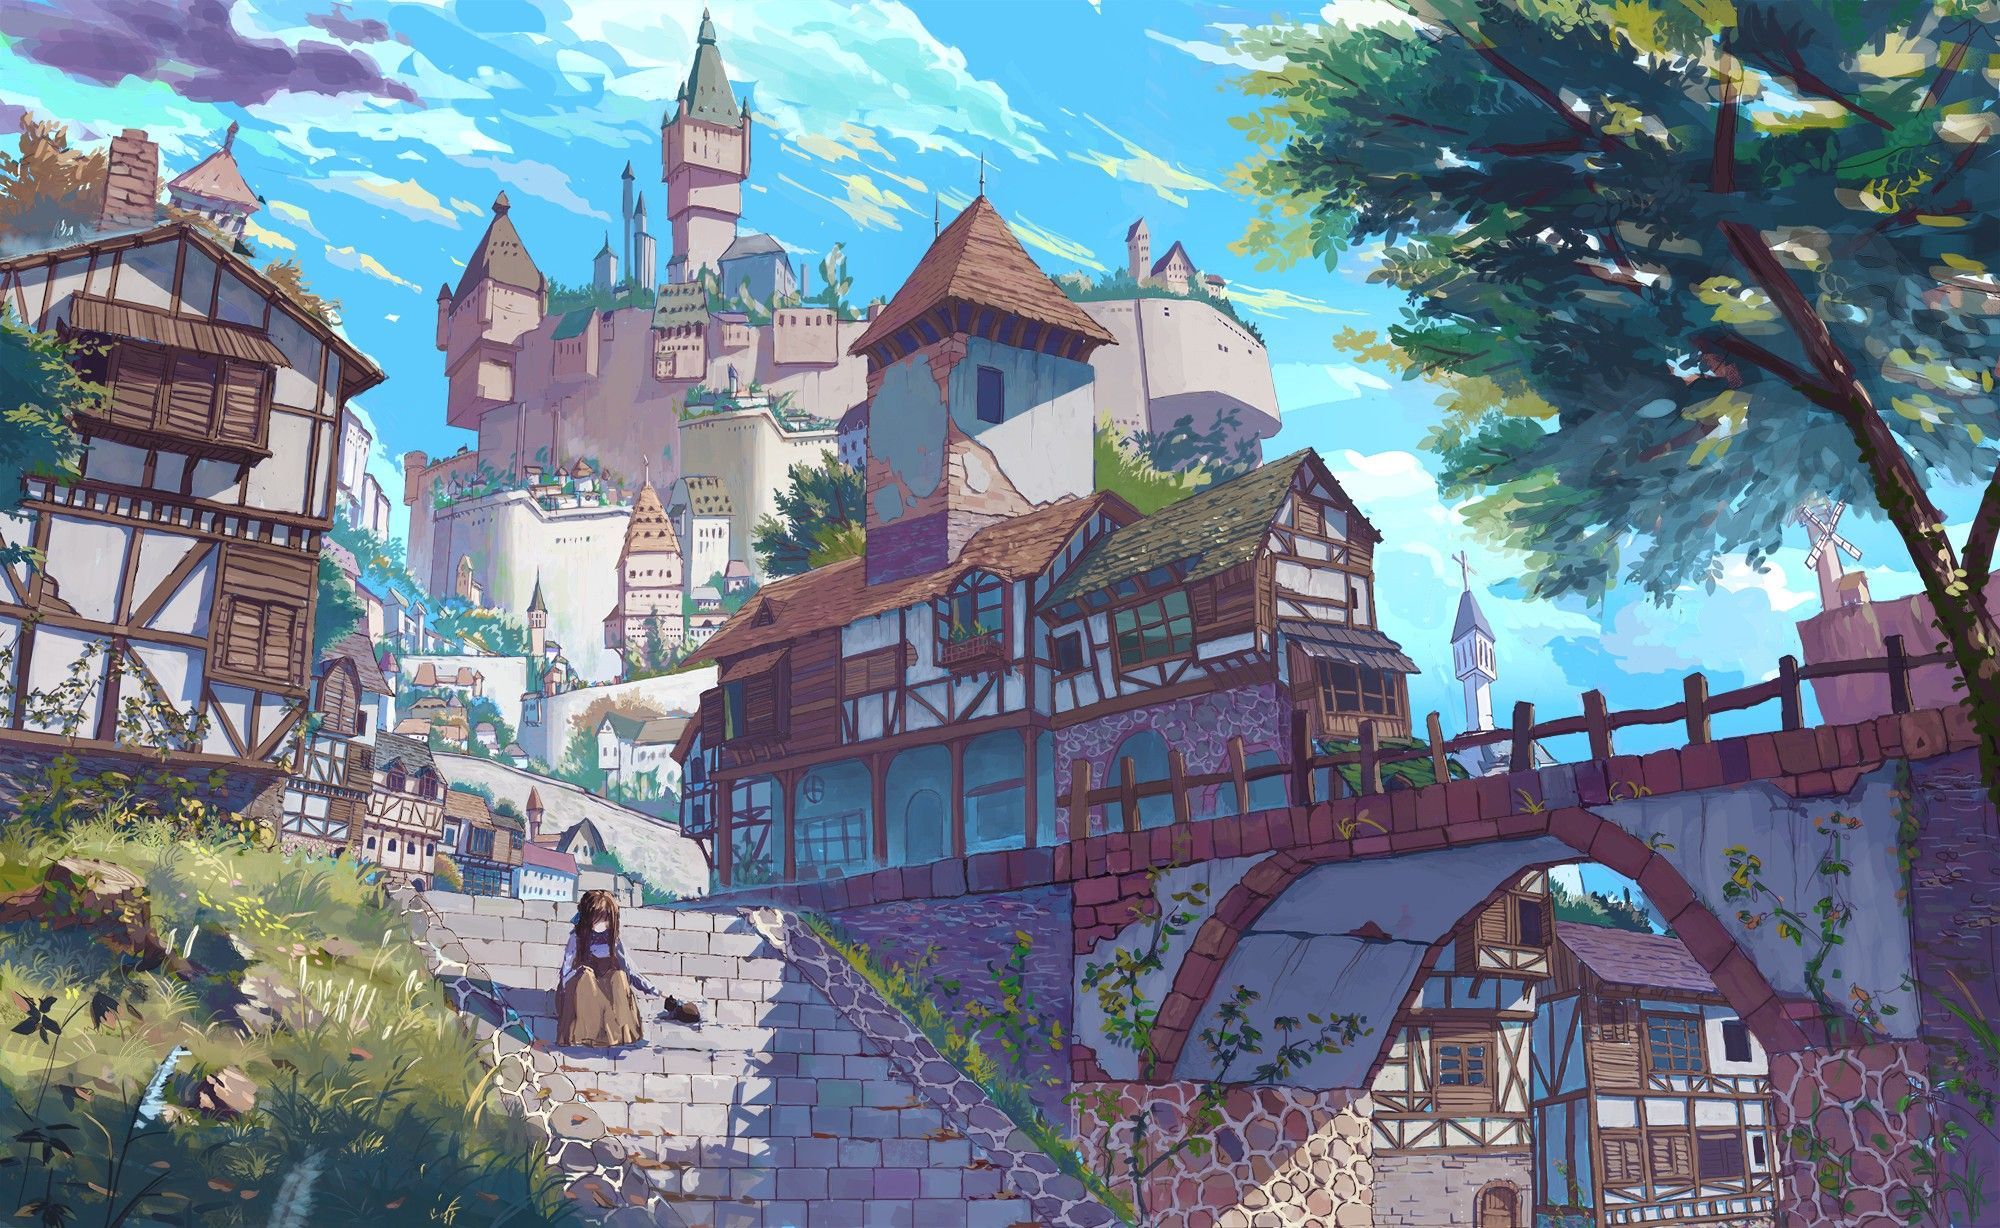 Anime Village HD Wallpapers: Hình nền Anime Village HD sẽ đưa bạn đến một thế giới thần tượng đầy phong cảnh đẹp mắt. Bạn sẽ được khám phá những ngôi làng được lấy cảm hứng từ anime và manga, từ những chuỗi đèn lồng vui tươi đến những ngôi nhà nhỏ xinh. Hãy tải về hình nền này và làm mới màn hình điện thoại của bạn!